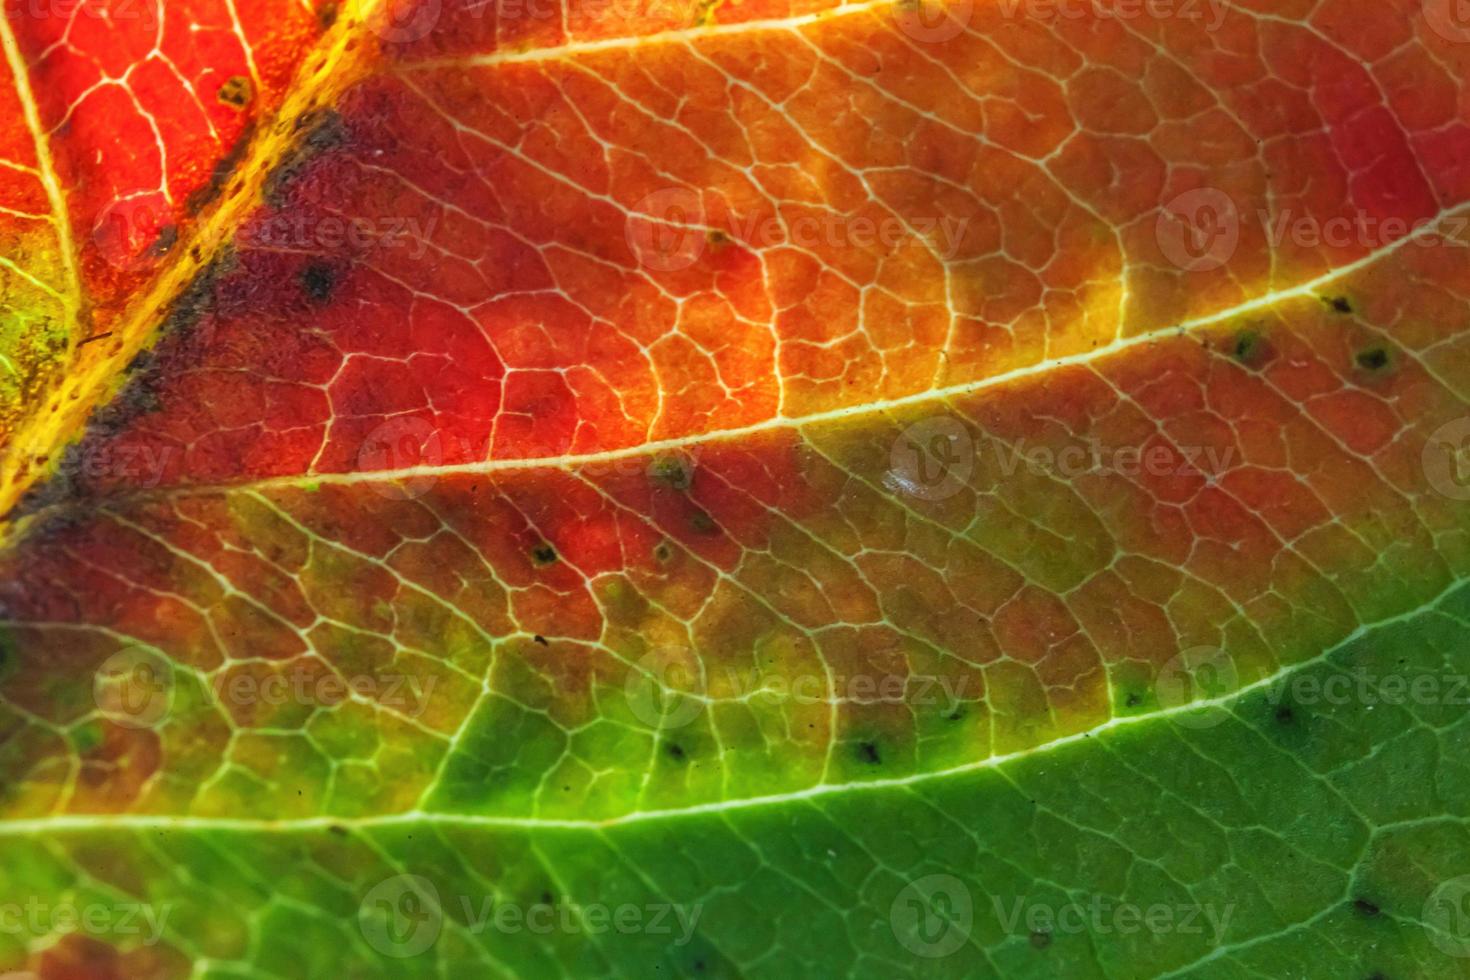 Nahaufnahme Herbst Herbst extreme Makro Textur Blick auf rot orange grün Holz Blatt Baum Blatt glühen in Sonne Hintergrund. inspirierende natur oktober oder september hintergrundbild. wechsel der jahreszeiten konzept. foto